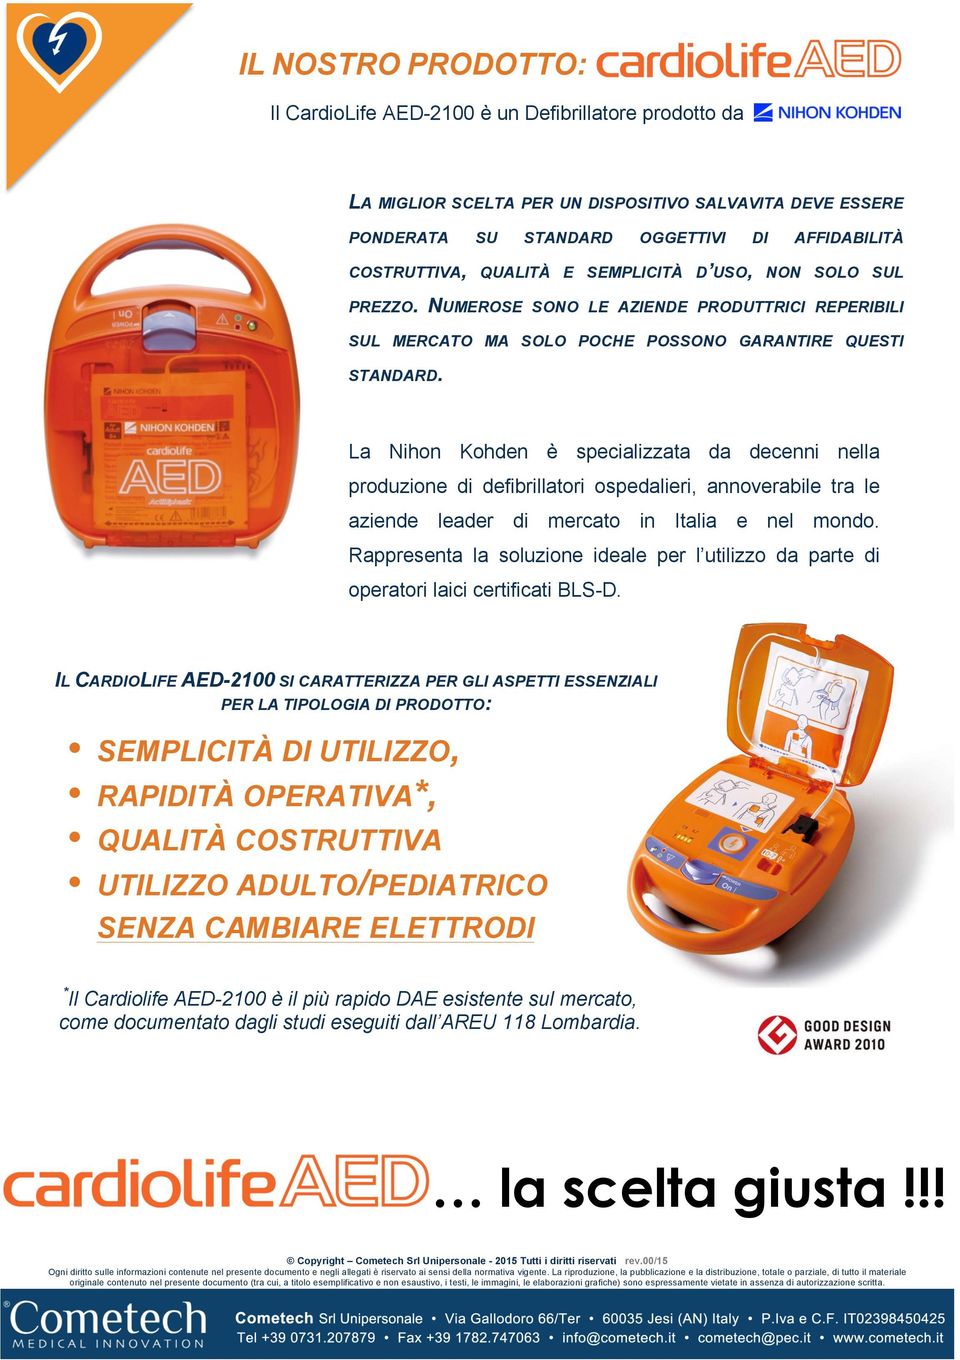 La Nihon Kohden è specializzata da decenni nella produzione di defibrillatori ospedalieri, annoverabile tra le aziende leader di mercato in Italia e nel mondo.